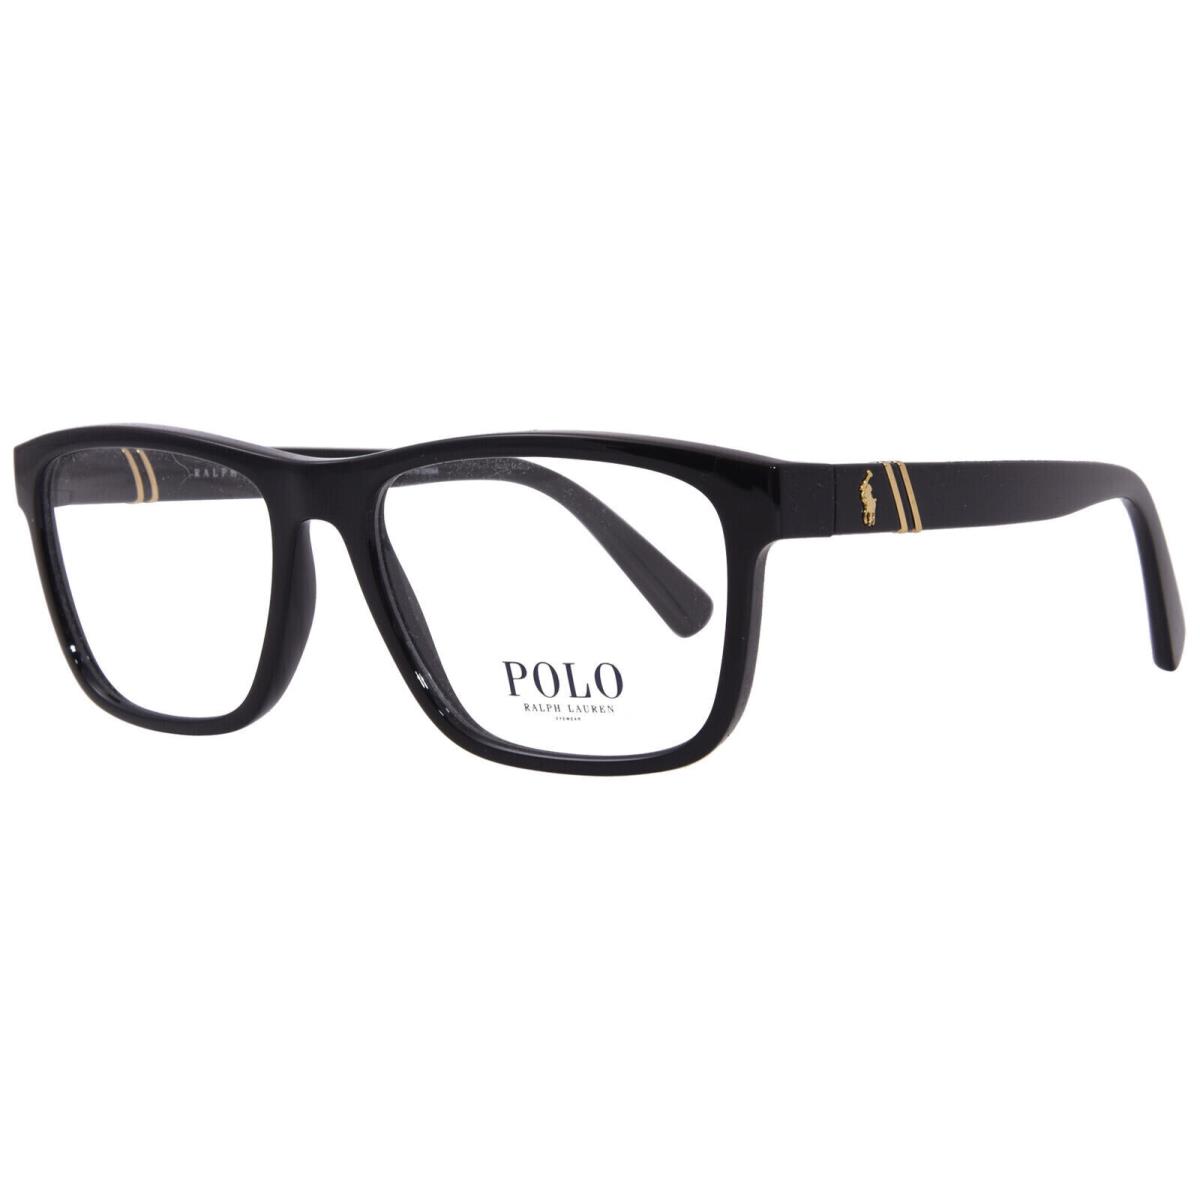 Ralph Lauren Polo Eyeglasses PH 2230 5001 Black Optical Frame 54-17-145